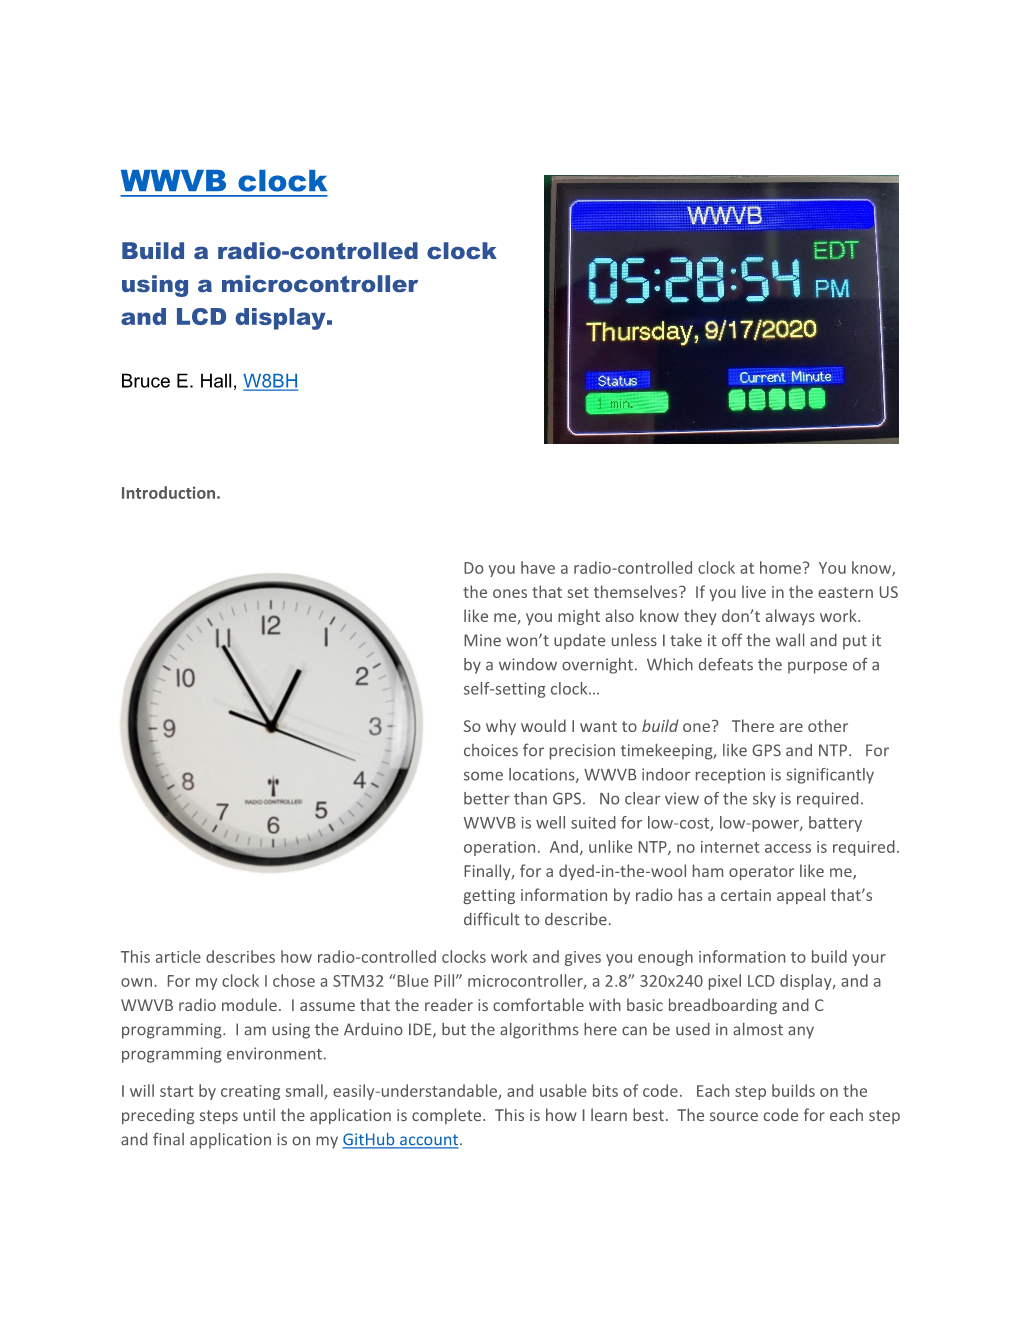 WWVB Clock by W8BH